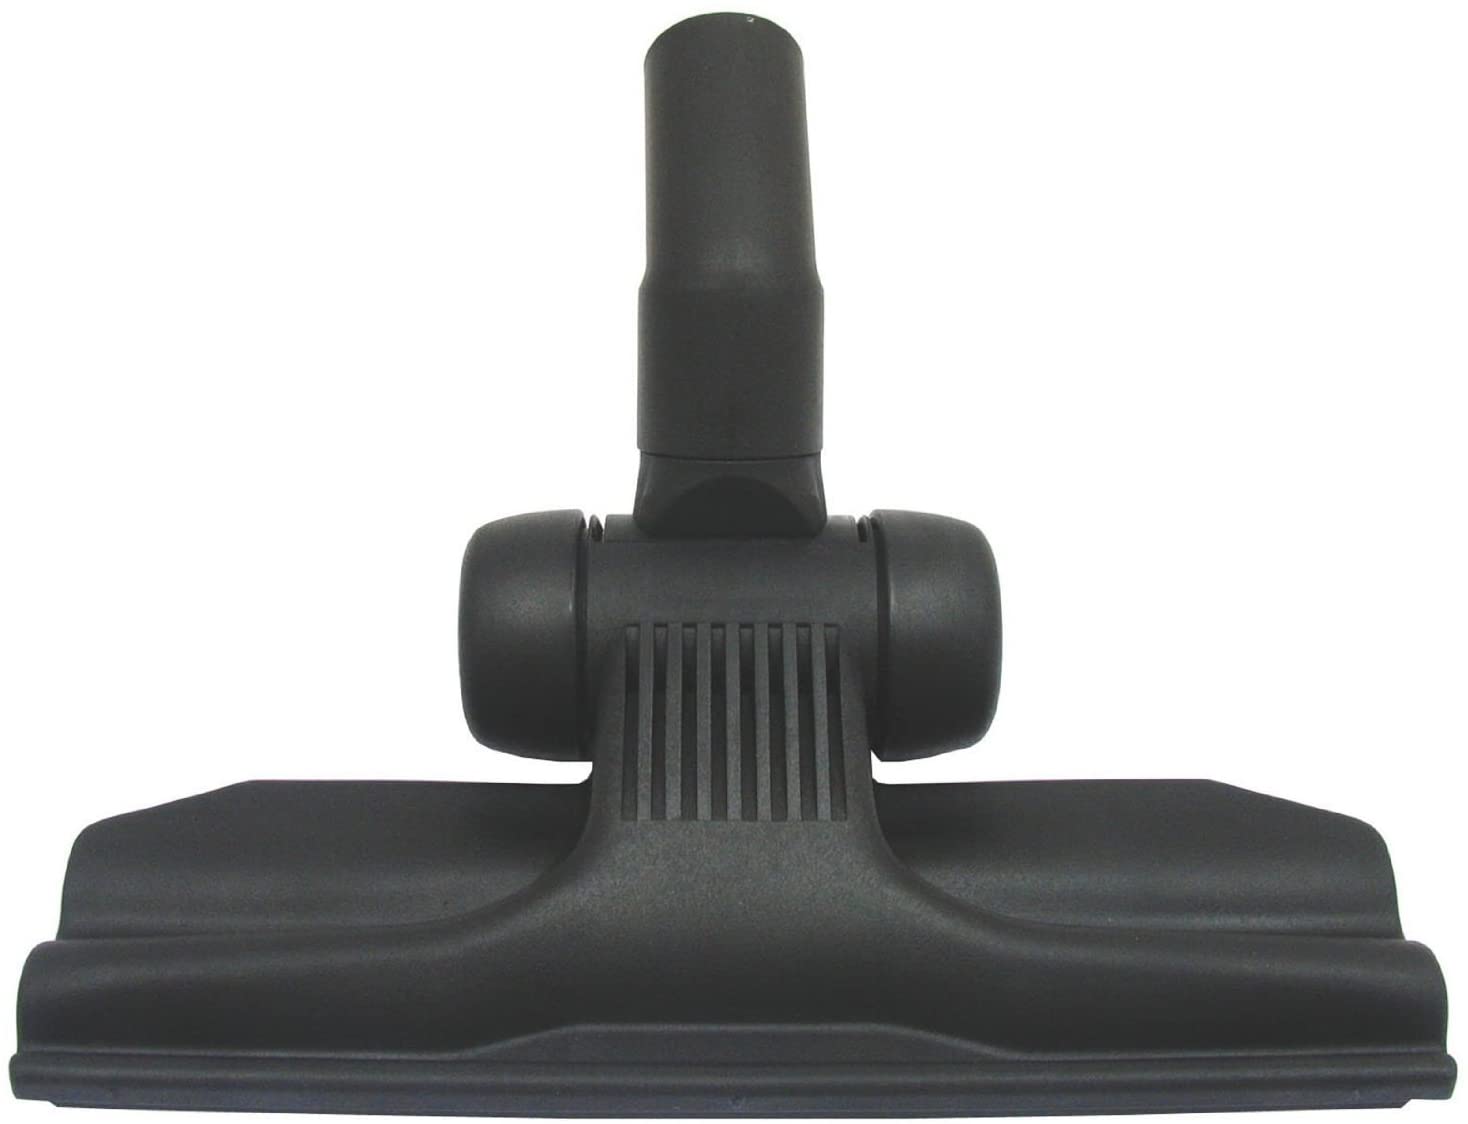 Deluxe Wheeled & Slim Hard Brush Tool for NILFISK Vacuum Cleaner 32mm